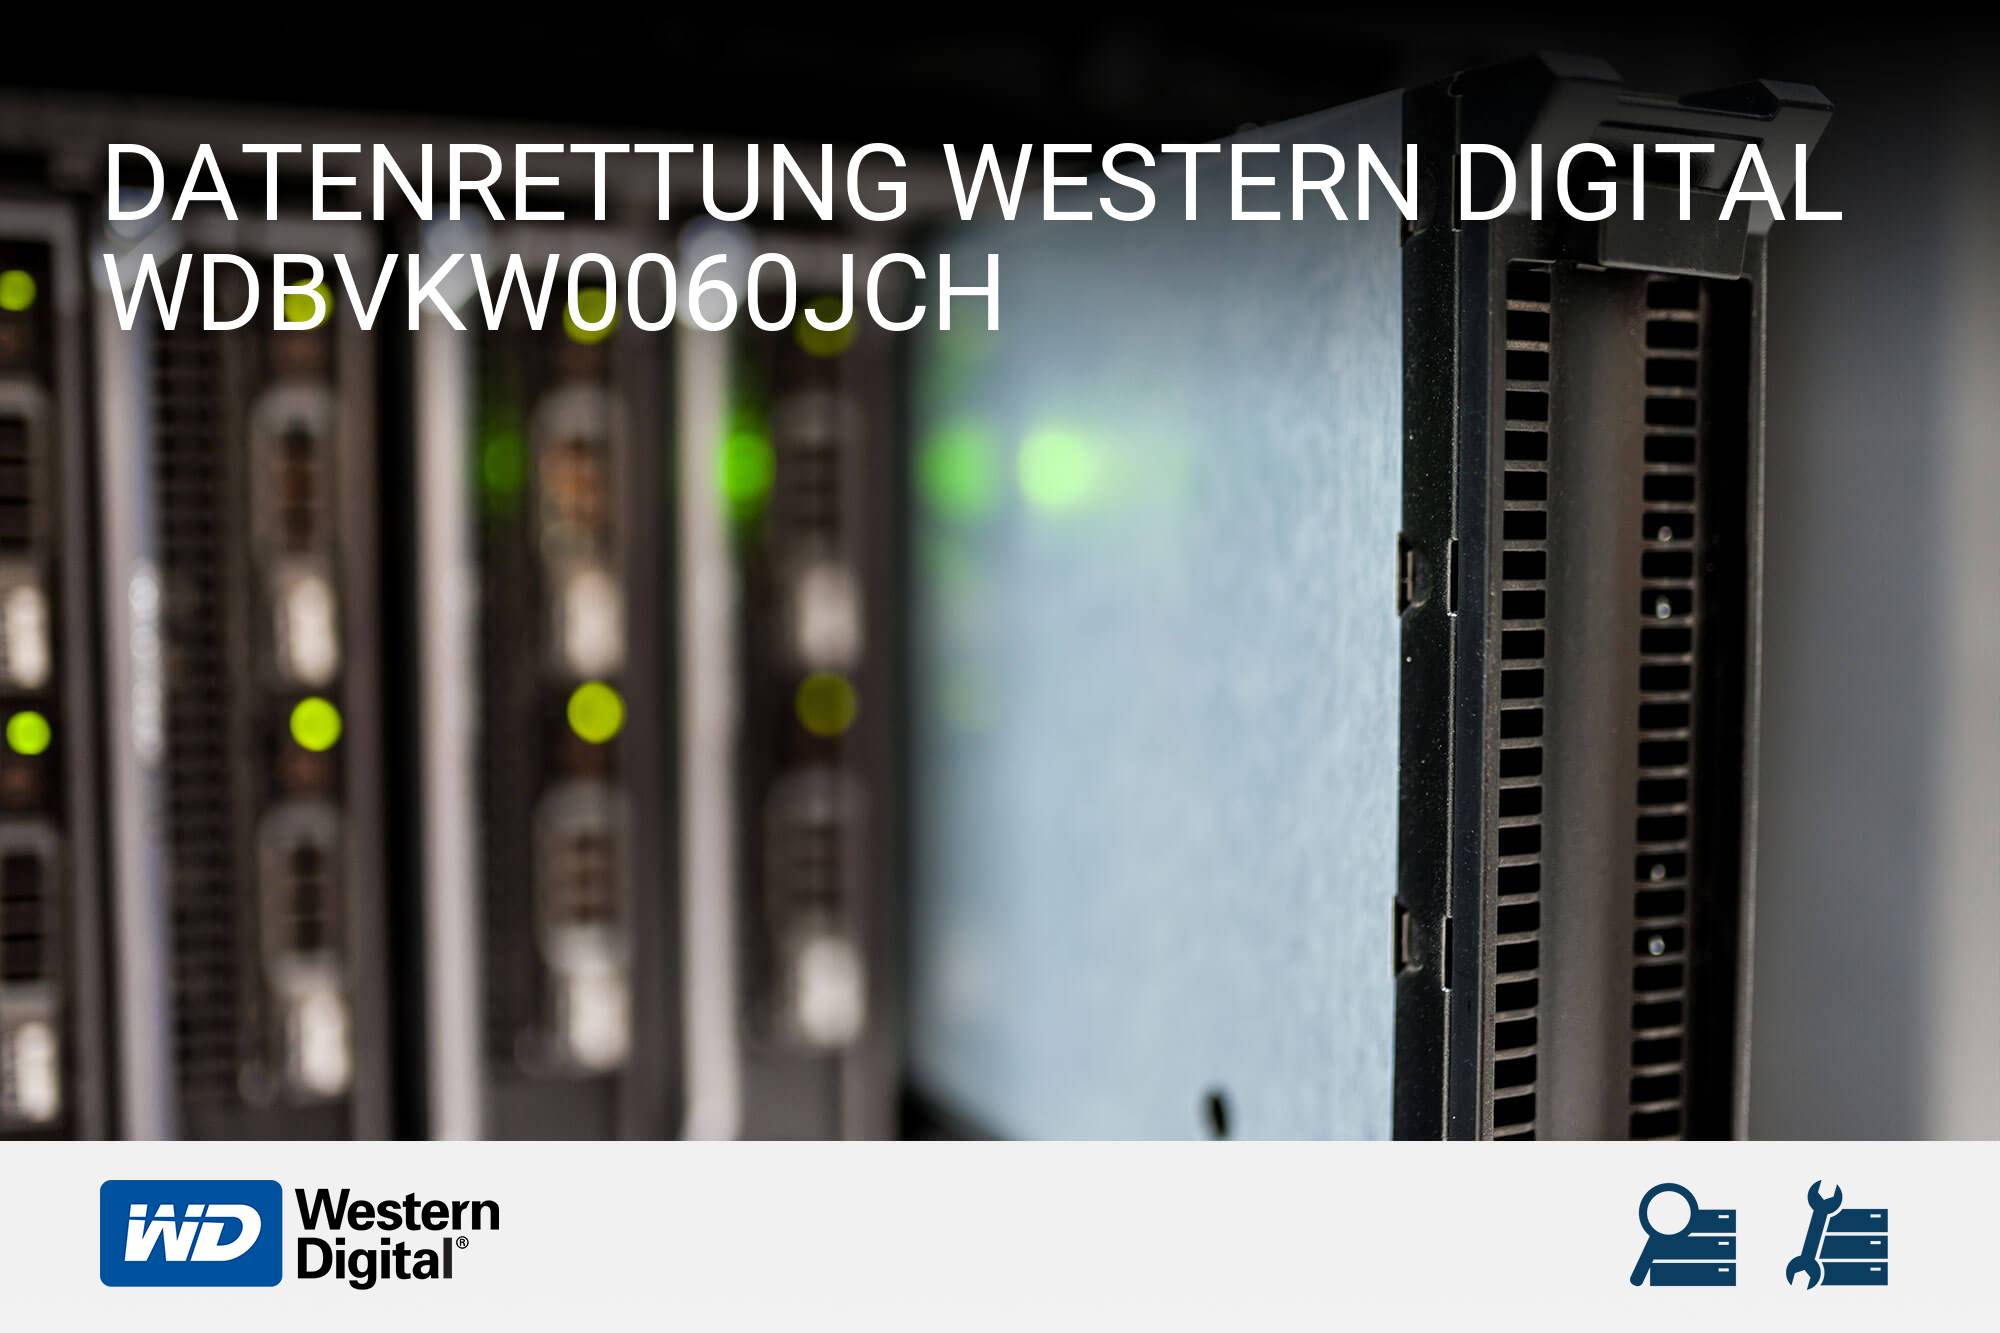 Western Digital WDBVKW0060JCH